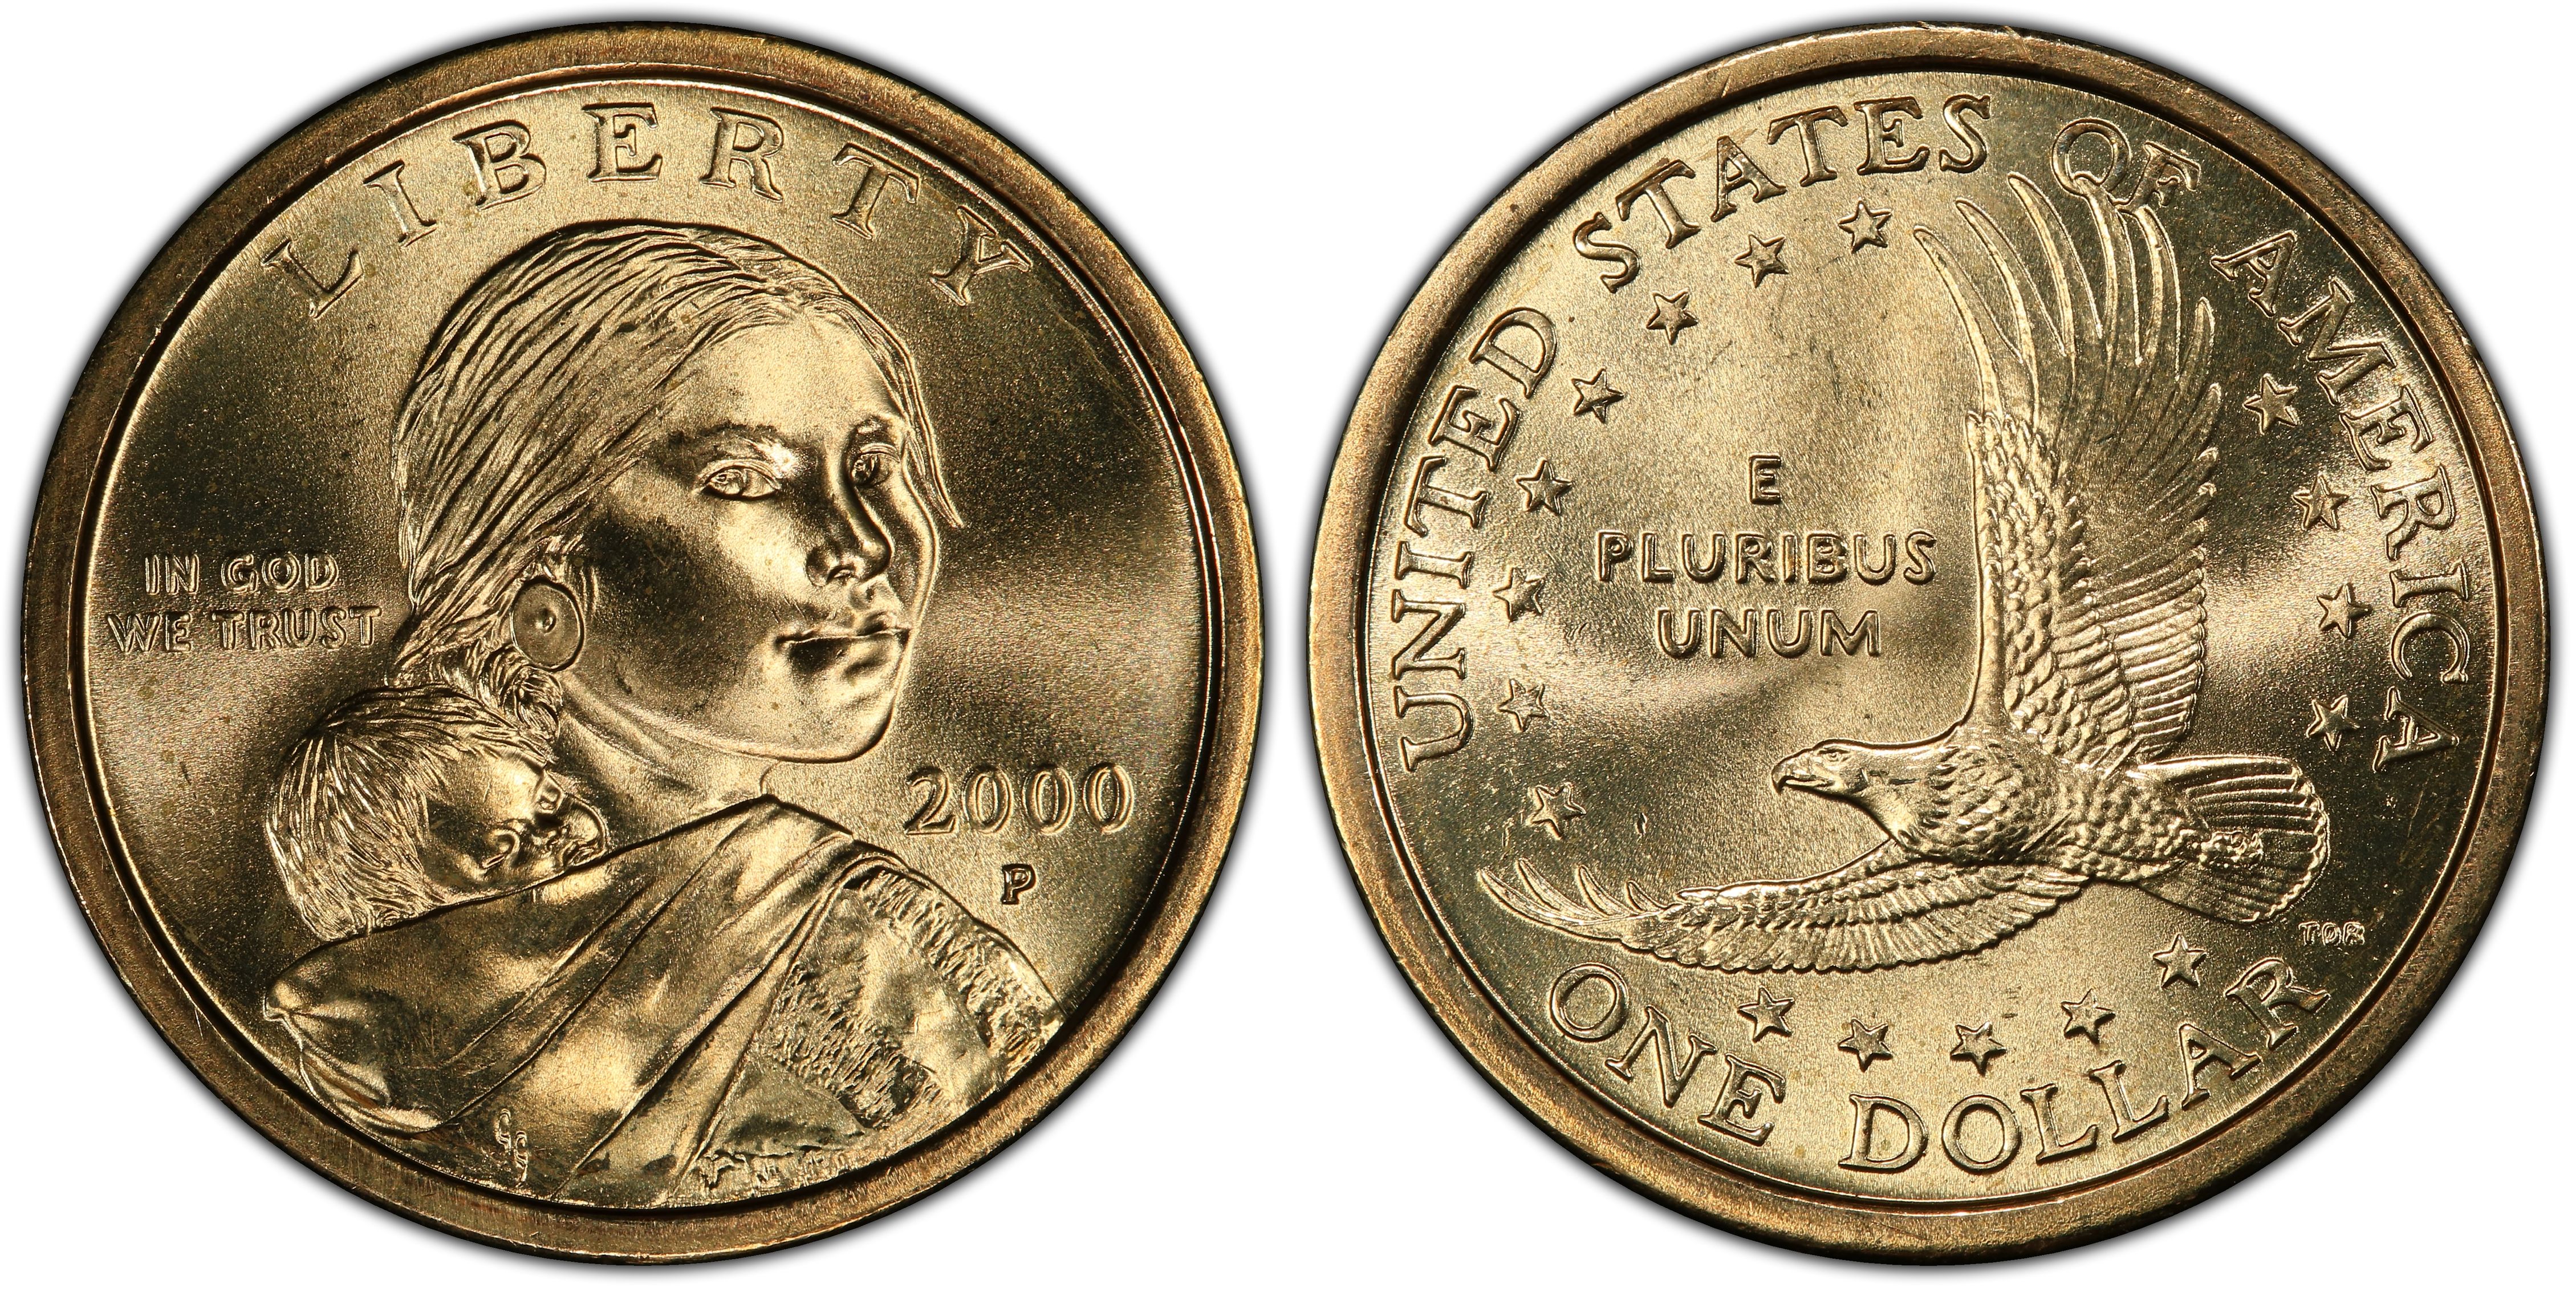 one dollar coin 2000 e pluribus unum value